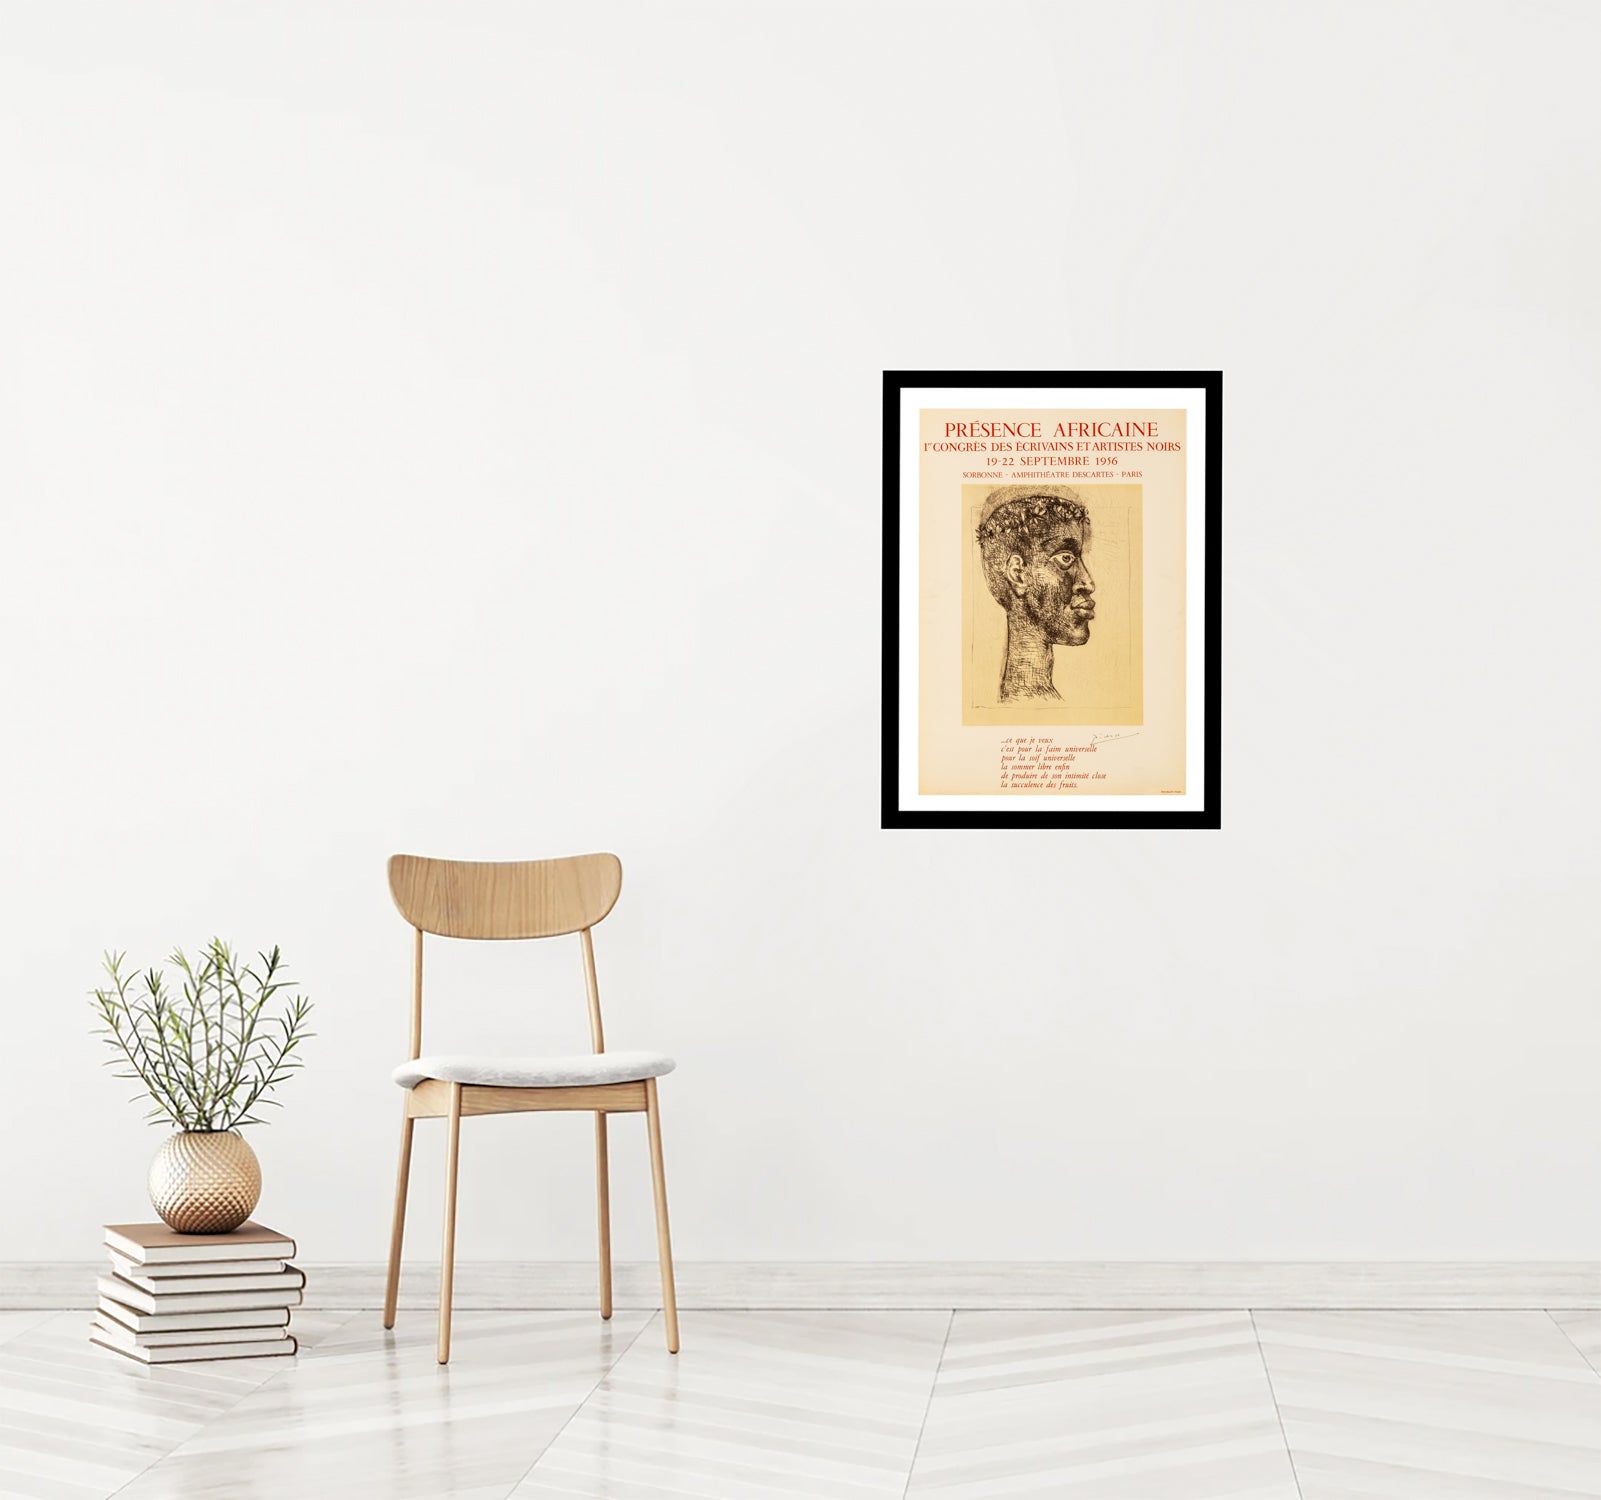 Portrait d' Aimé Césaire - Presence Africaine (after) Pablo Picasso, 1956 - Mourlot Editions - Fine_Art - Poster - Lithograph - Wall Art - Vintage - Prints - Original